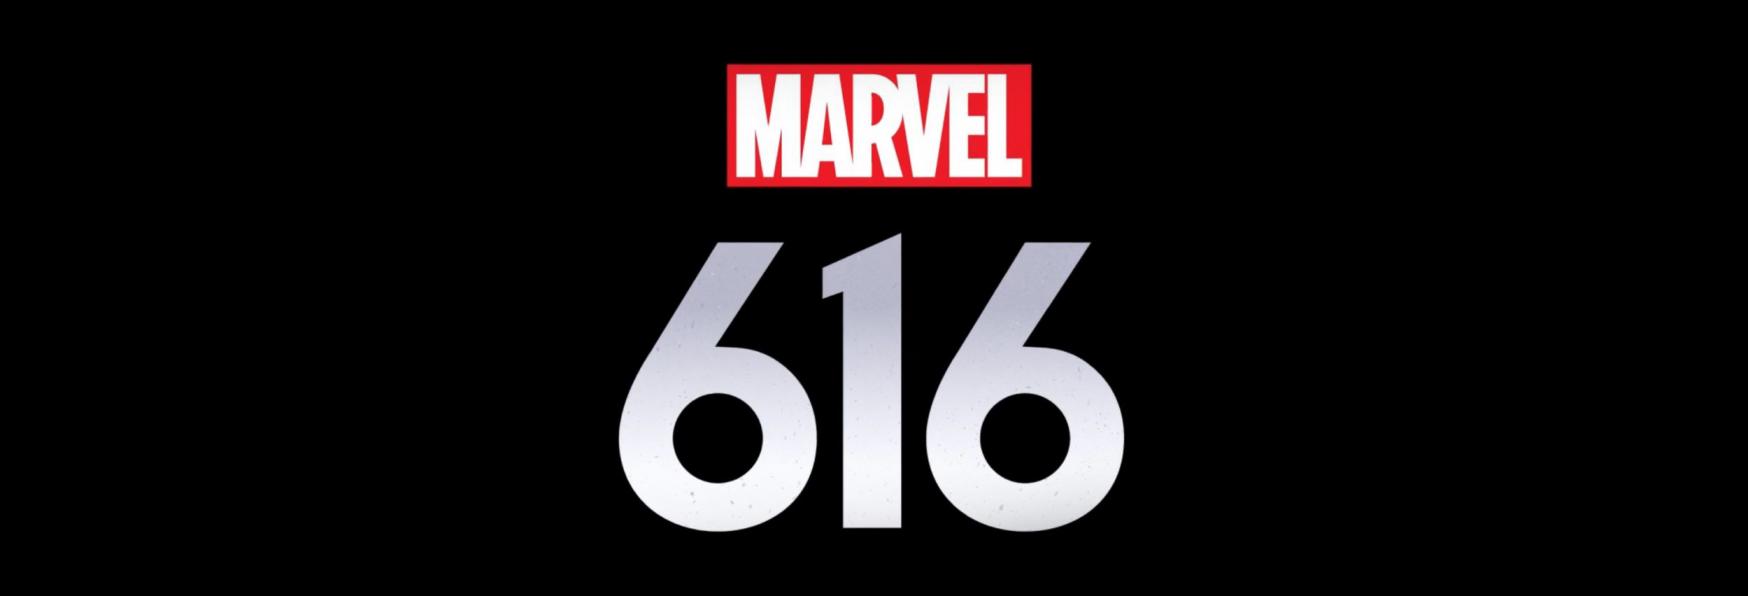 Marvel 616: Rilasciato il Trailer Ufficiale della nuova Serie TV targata Disney 